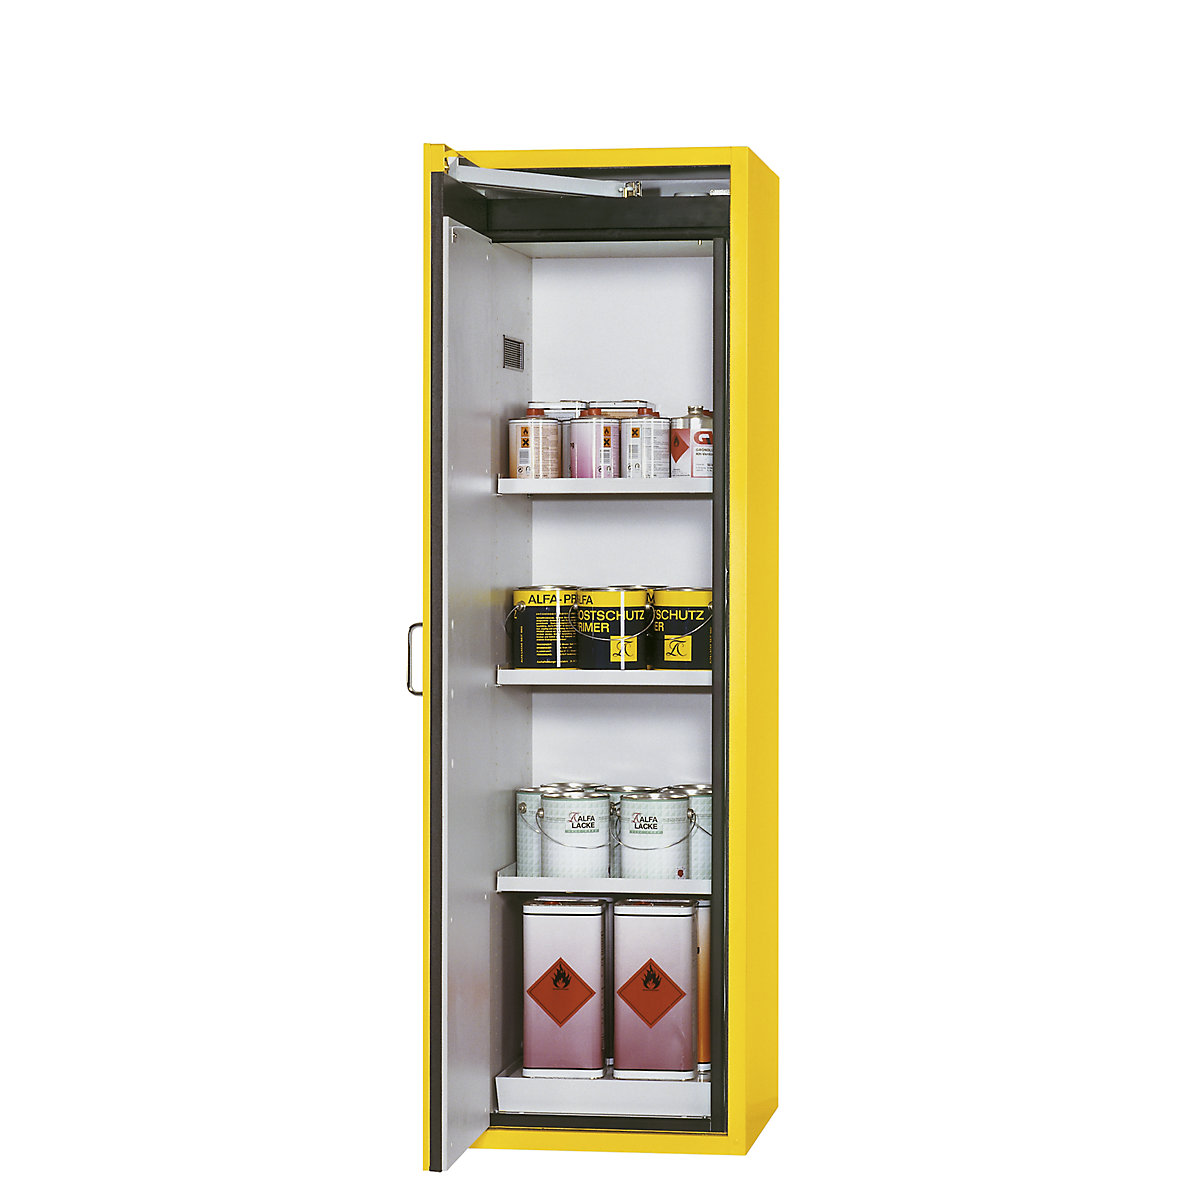 Brandveilige opslagkast voor gevaarlijke stoffen type 90 – asecos, 1-deurs, uitwendige h x b x d = 1968 x 600 x 615 mm, geel, in poedercoating-12